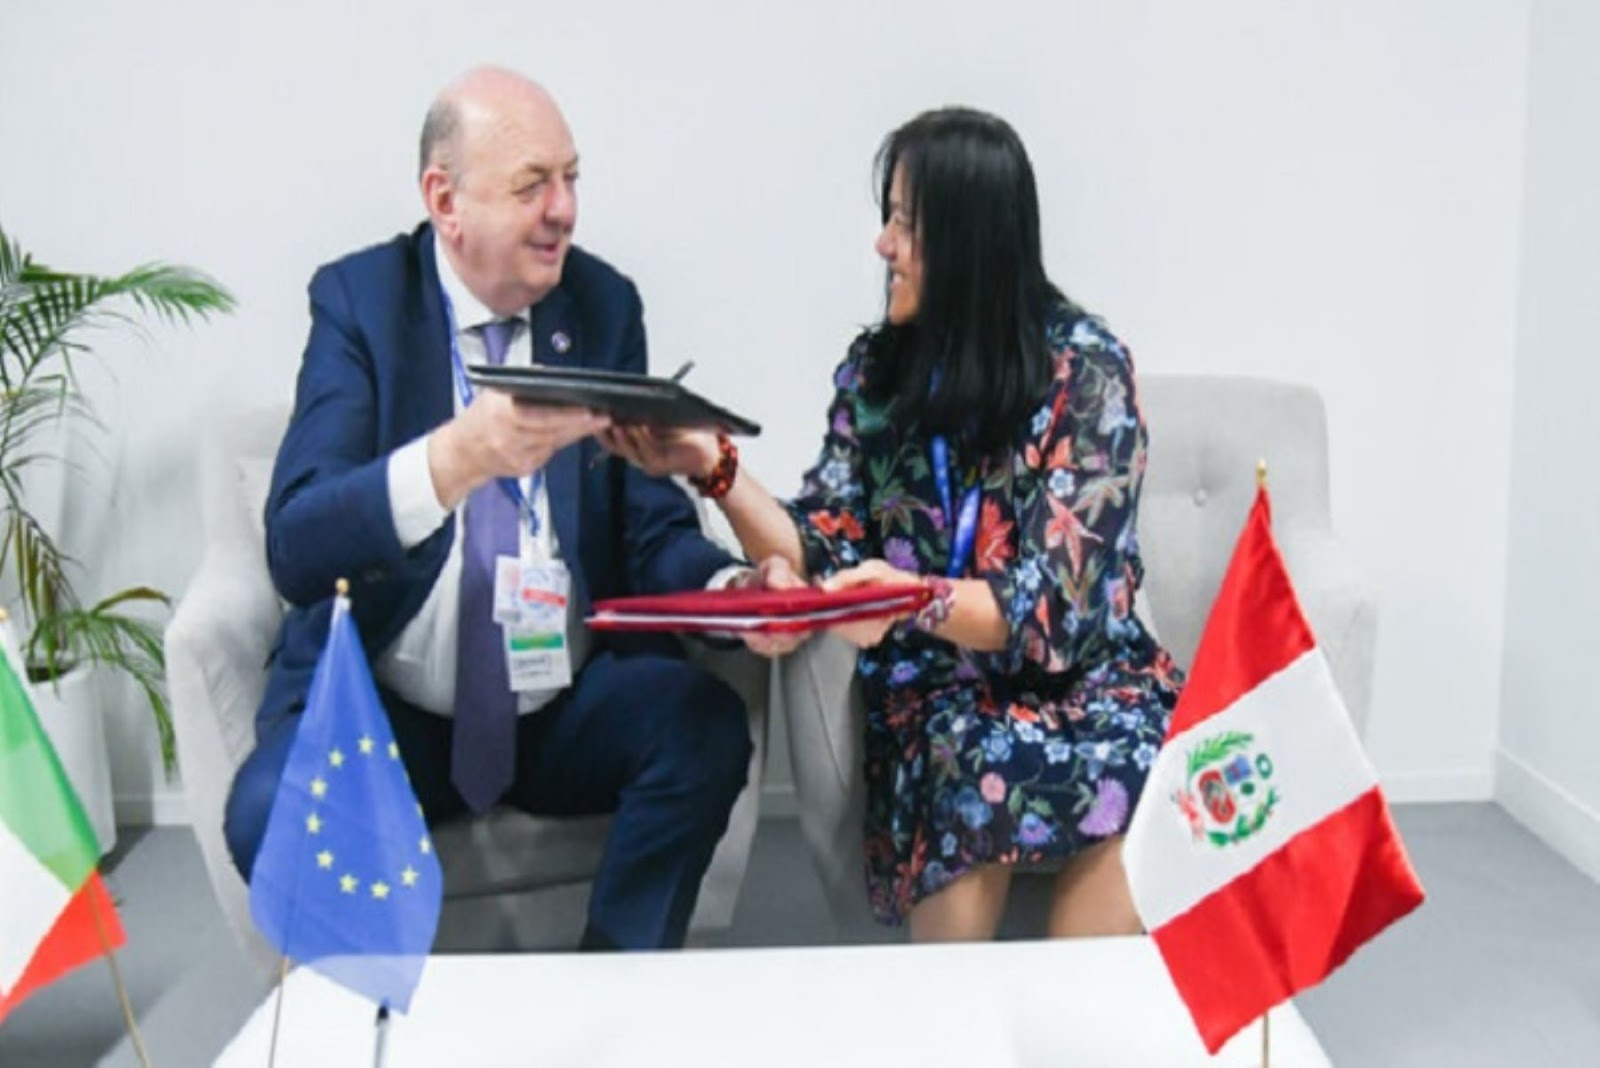 Ambos países hoy se ven beneficiados y se consolidan como líderes en la acción climática, en el marco de la Cumbre, destacó la ministra Albina Ruiz.